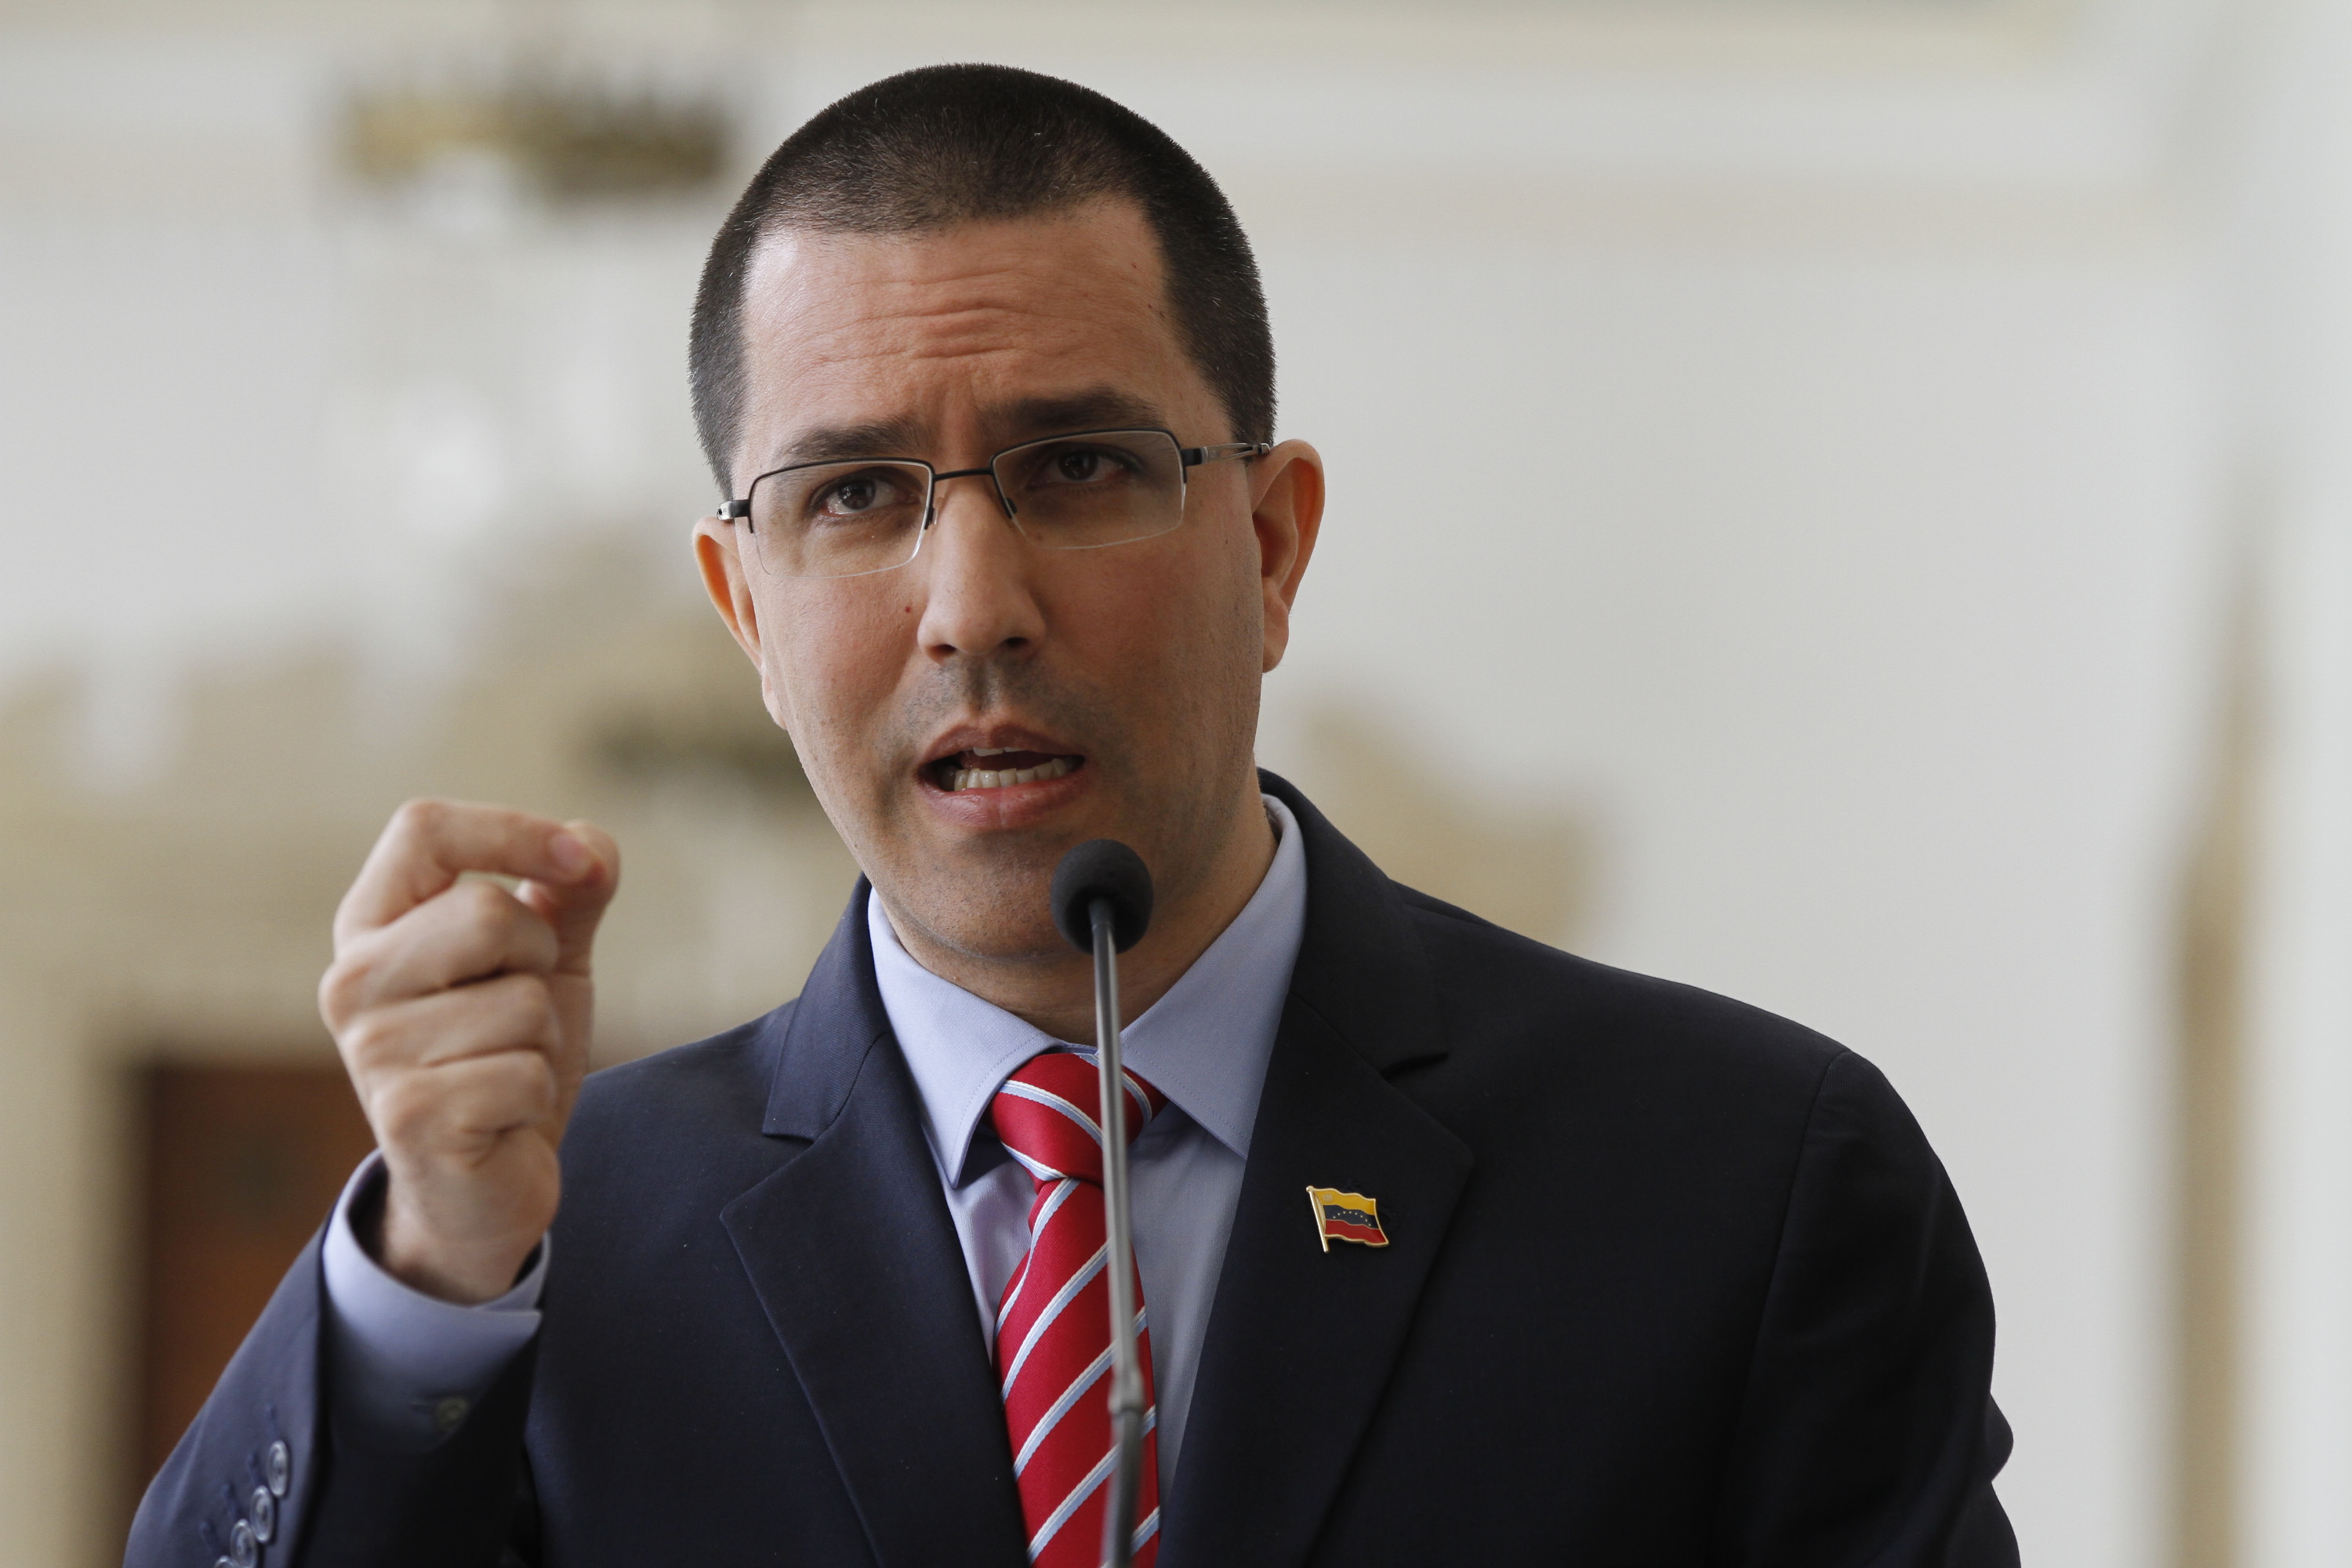 El próximo 20 de mayo Venezuela celebrará elecciones presidenciales y de Consejos Legislativos.